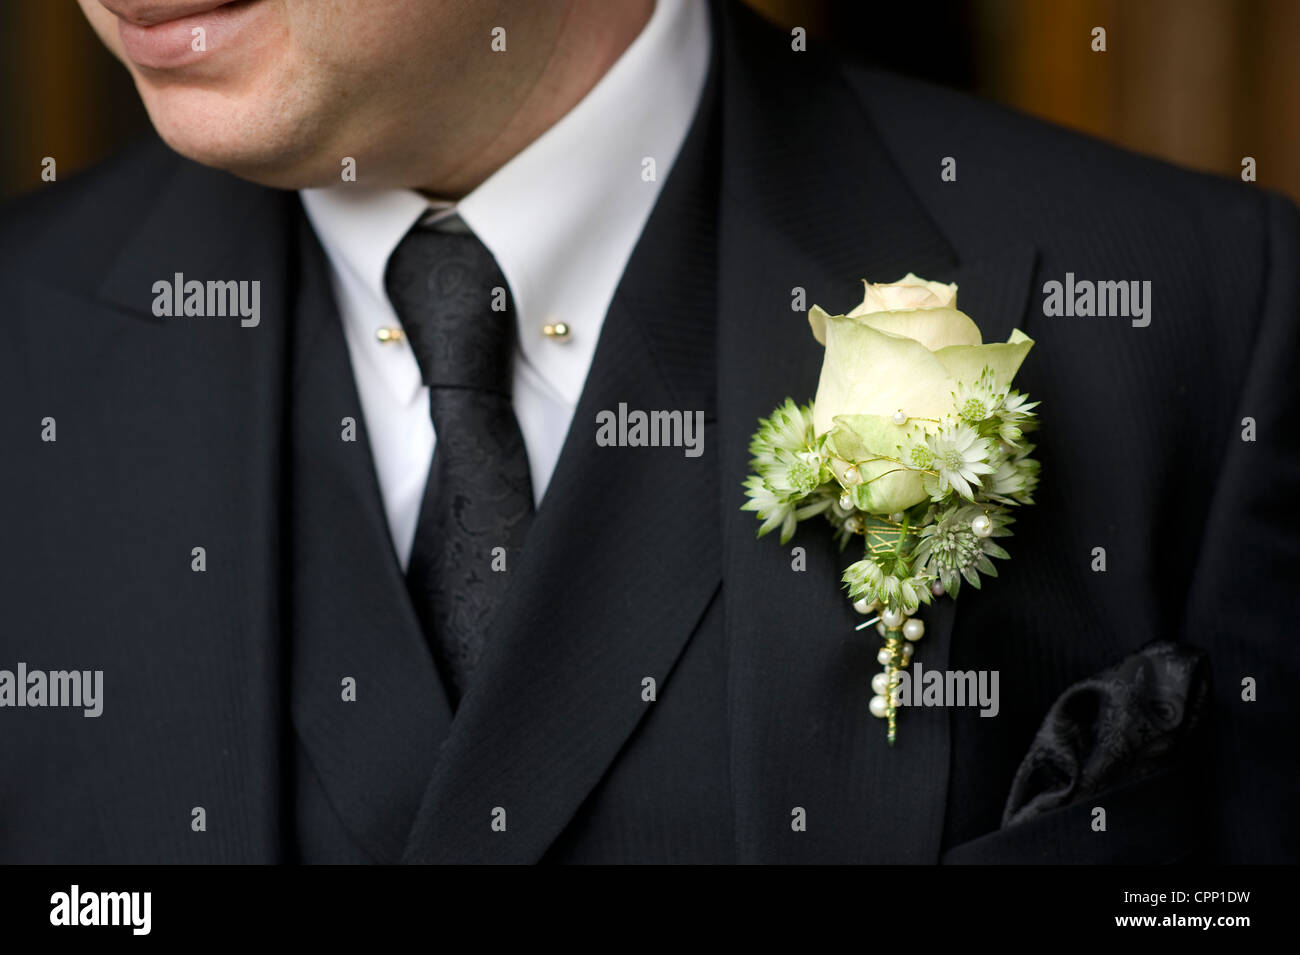 L'homme à un mariage ou des funérailles portant costume noir avec  boutonnière rose Photo Stock - Alamy